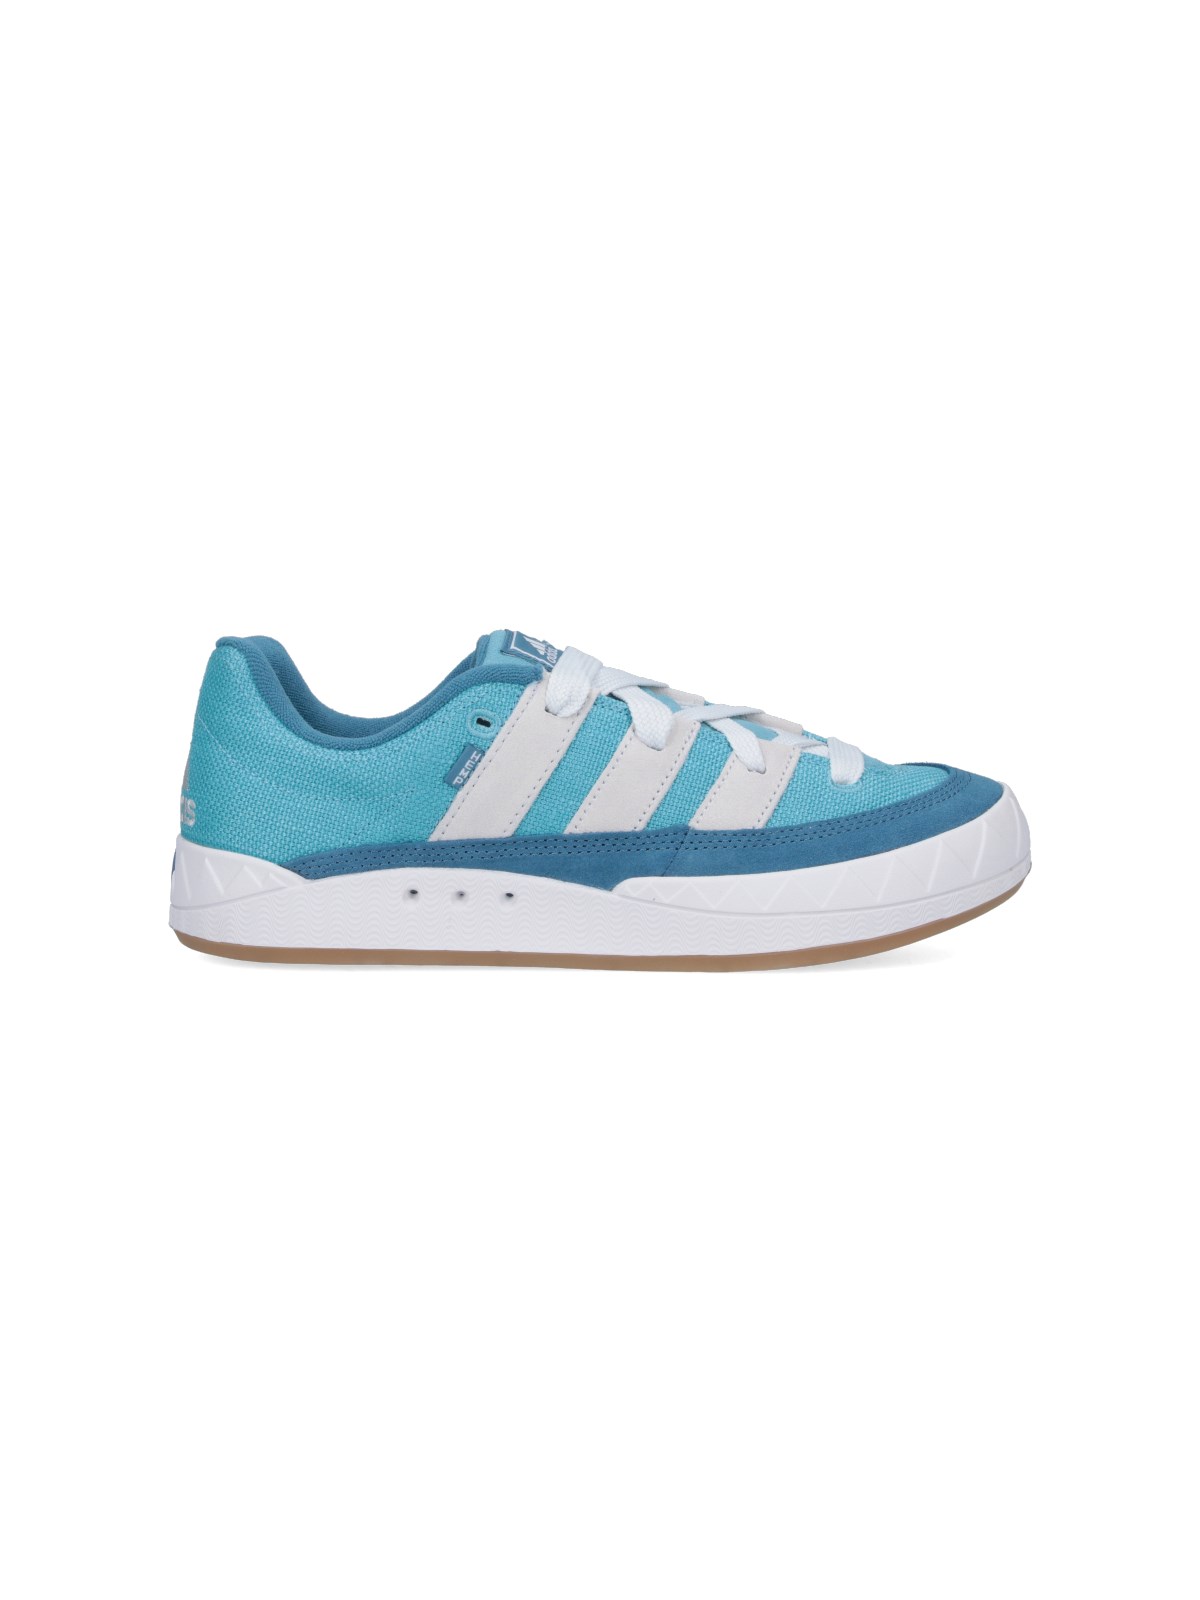 Adidas Originals Adimatic Trainer In Preloved Blue/crystal White/gum 3